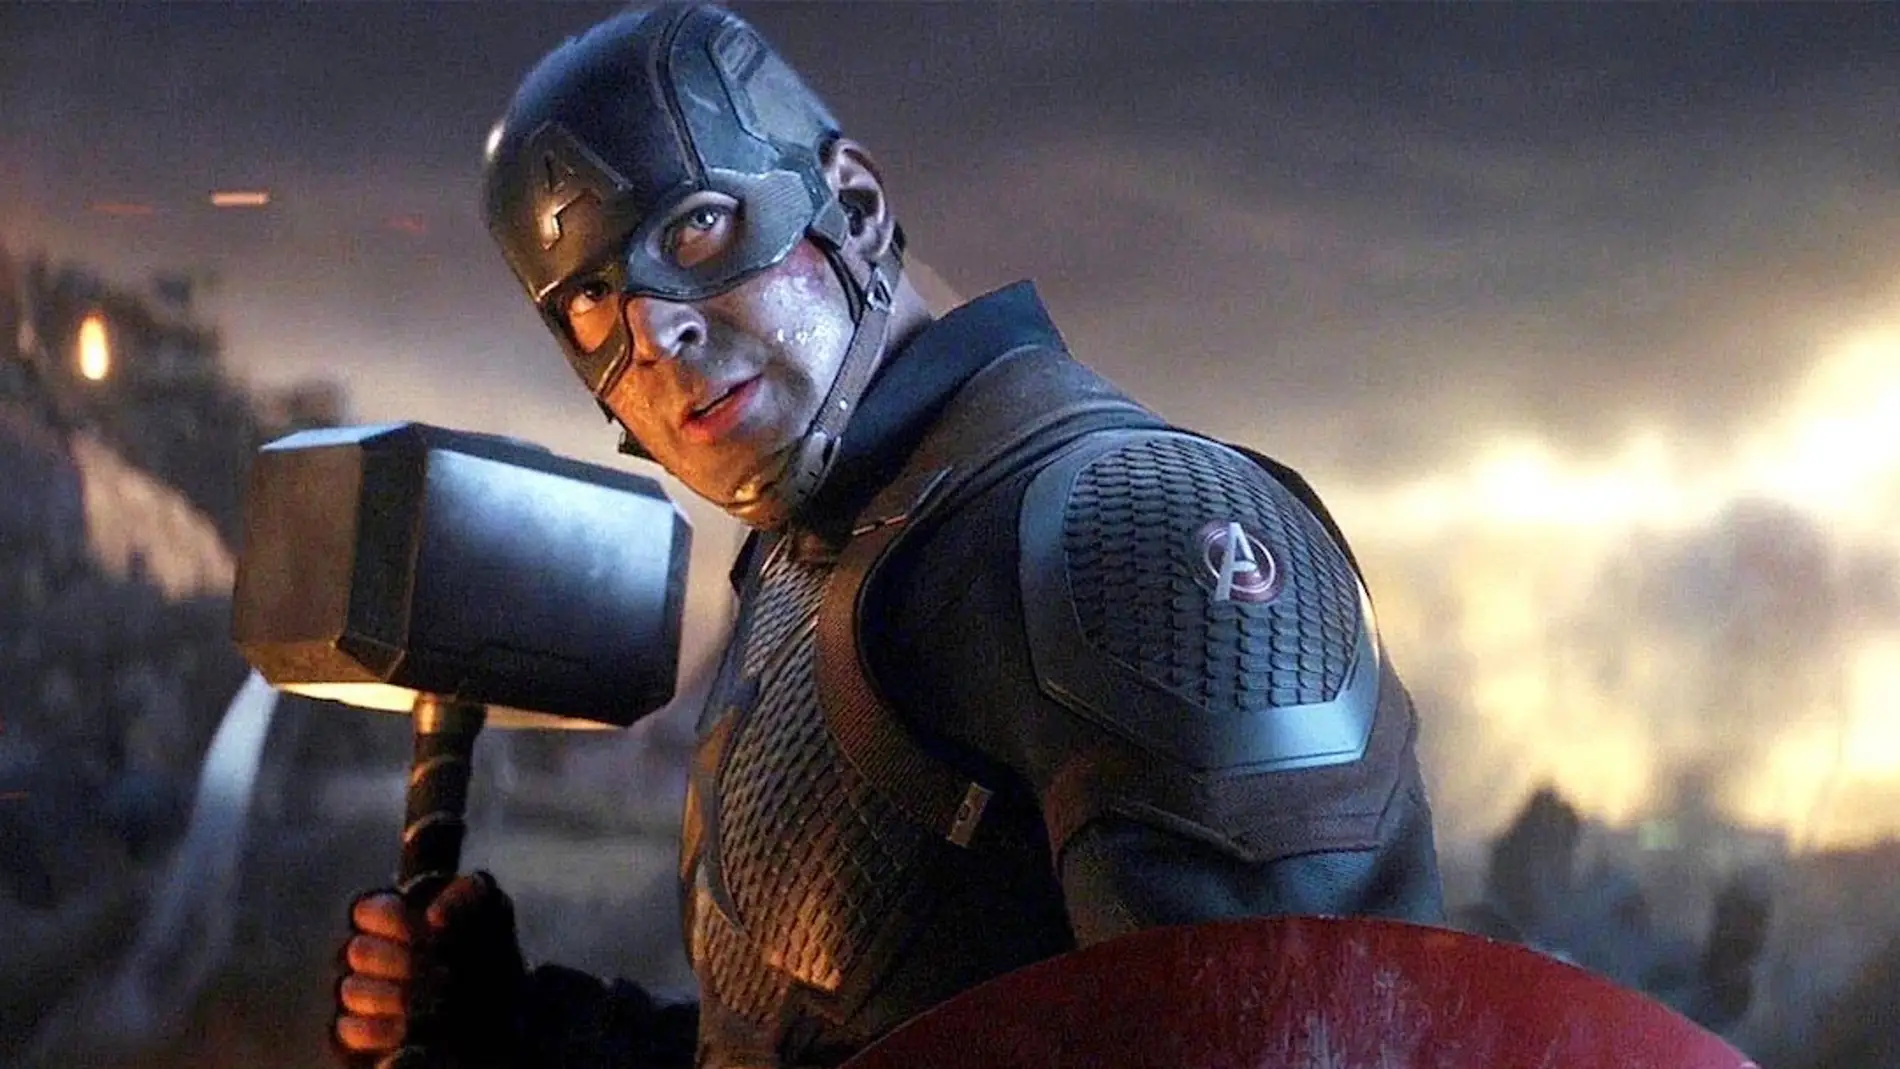 La desconocida a Capitán América que te perdiste en una película de Marvel antes de Chris Evans